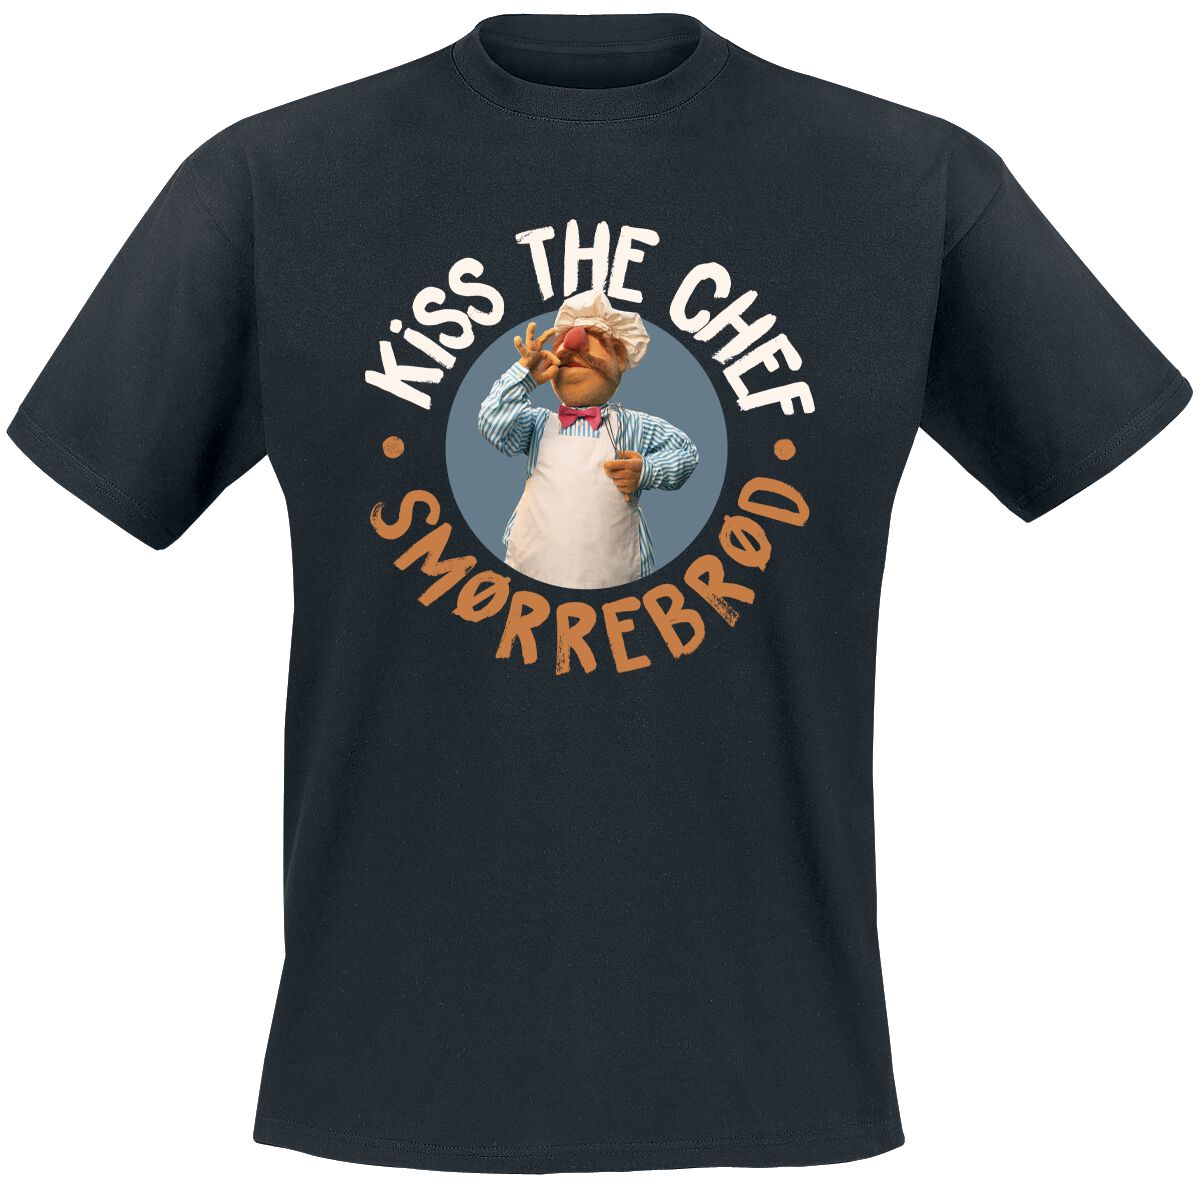 Die Muppets T-Shirt - Kiss The Chef - Smorrebrod - M bis 5XL - für Männer - Größe XXL - schwarz  - Lizenzierter Fanartikel